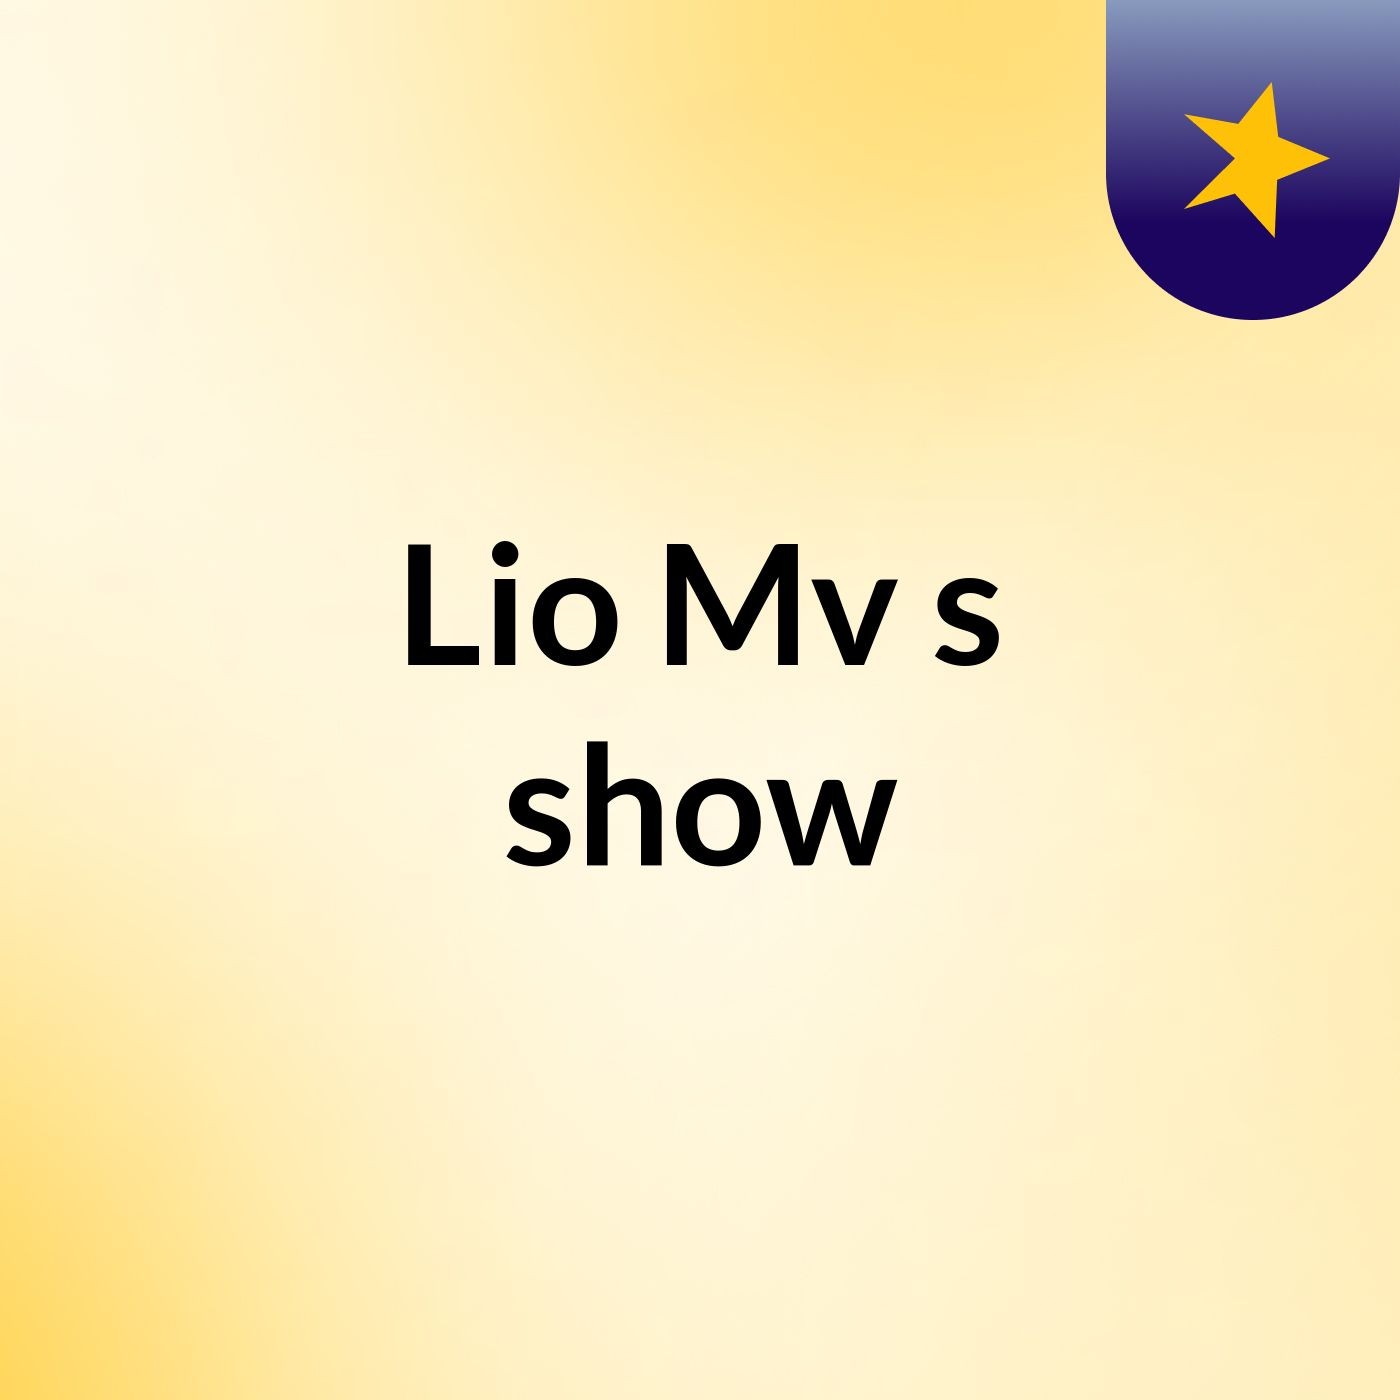 Lio Mv's show